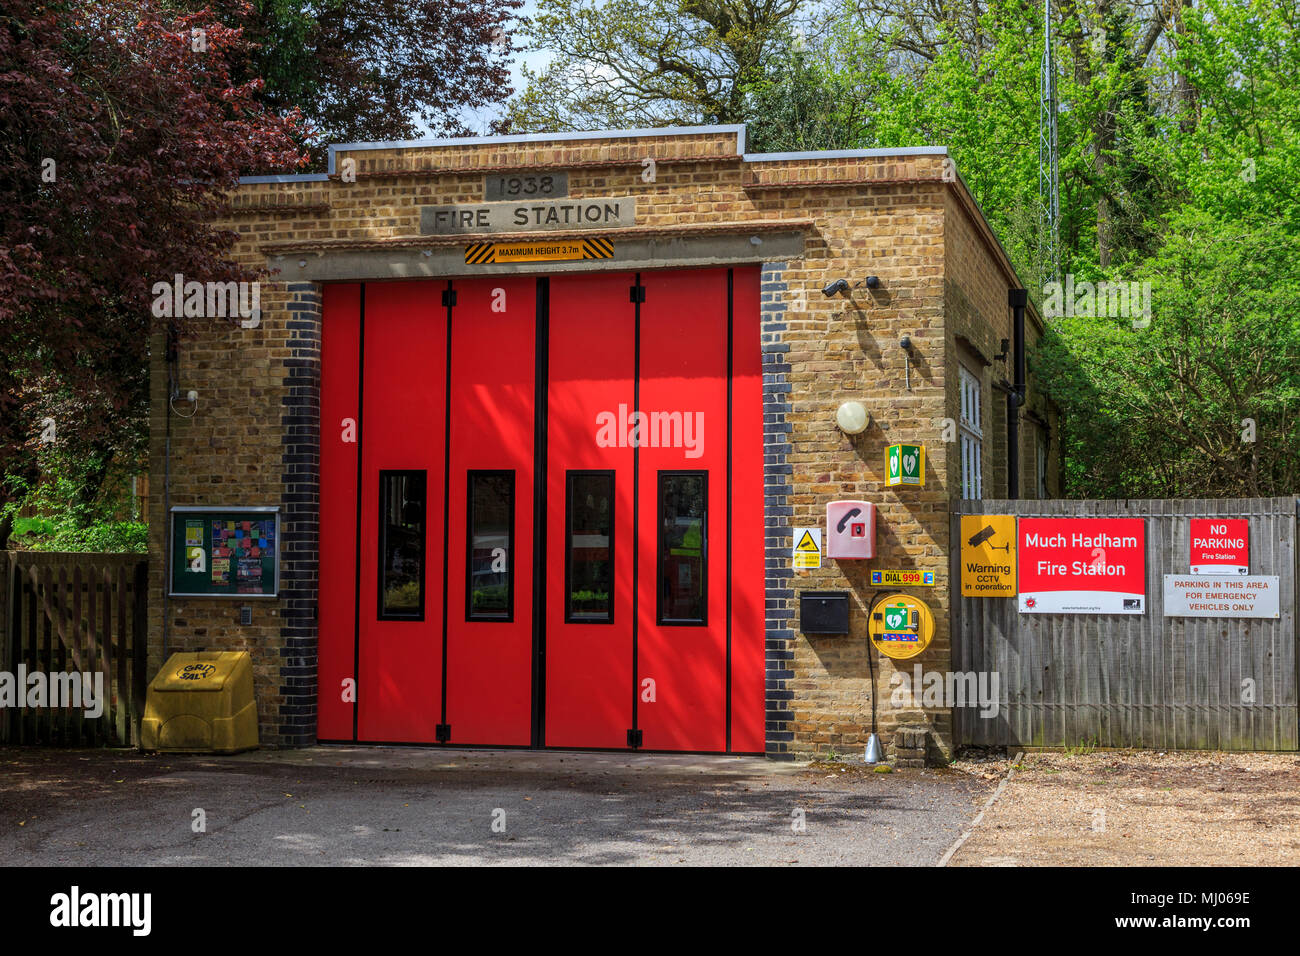 A tiempo parcial a la estación de bomberos en la bonita aldea de deseable y mucho hadham High street hertfordshire, Herts, Inglaterra.uk,gb Foto de stock